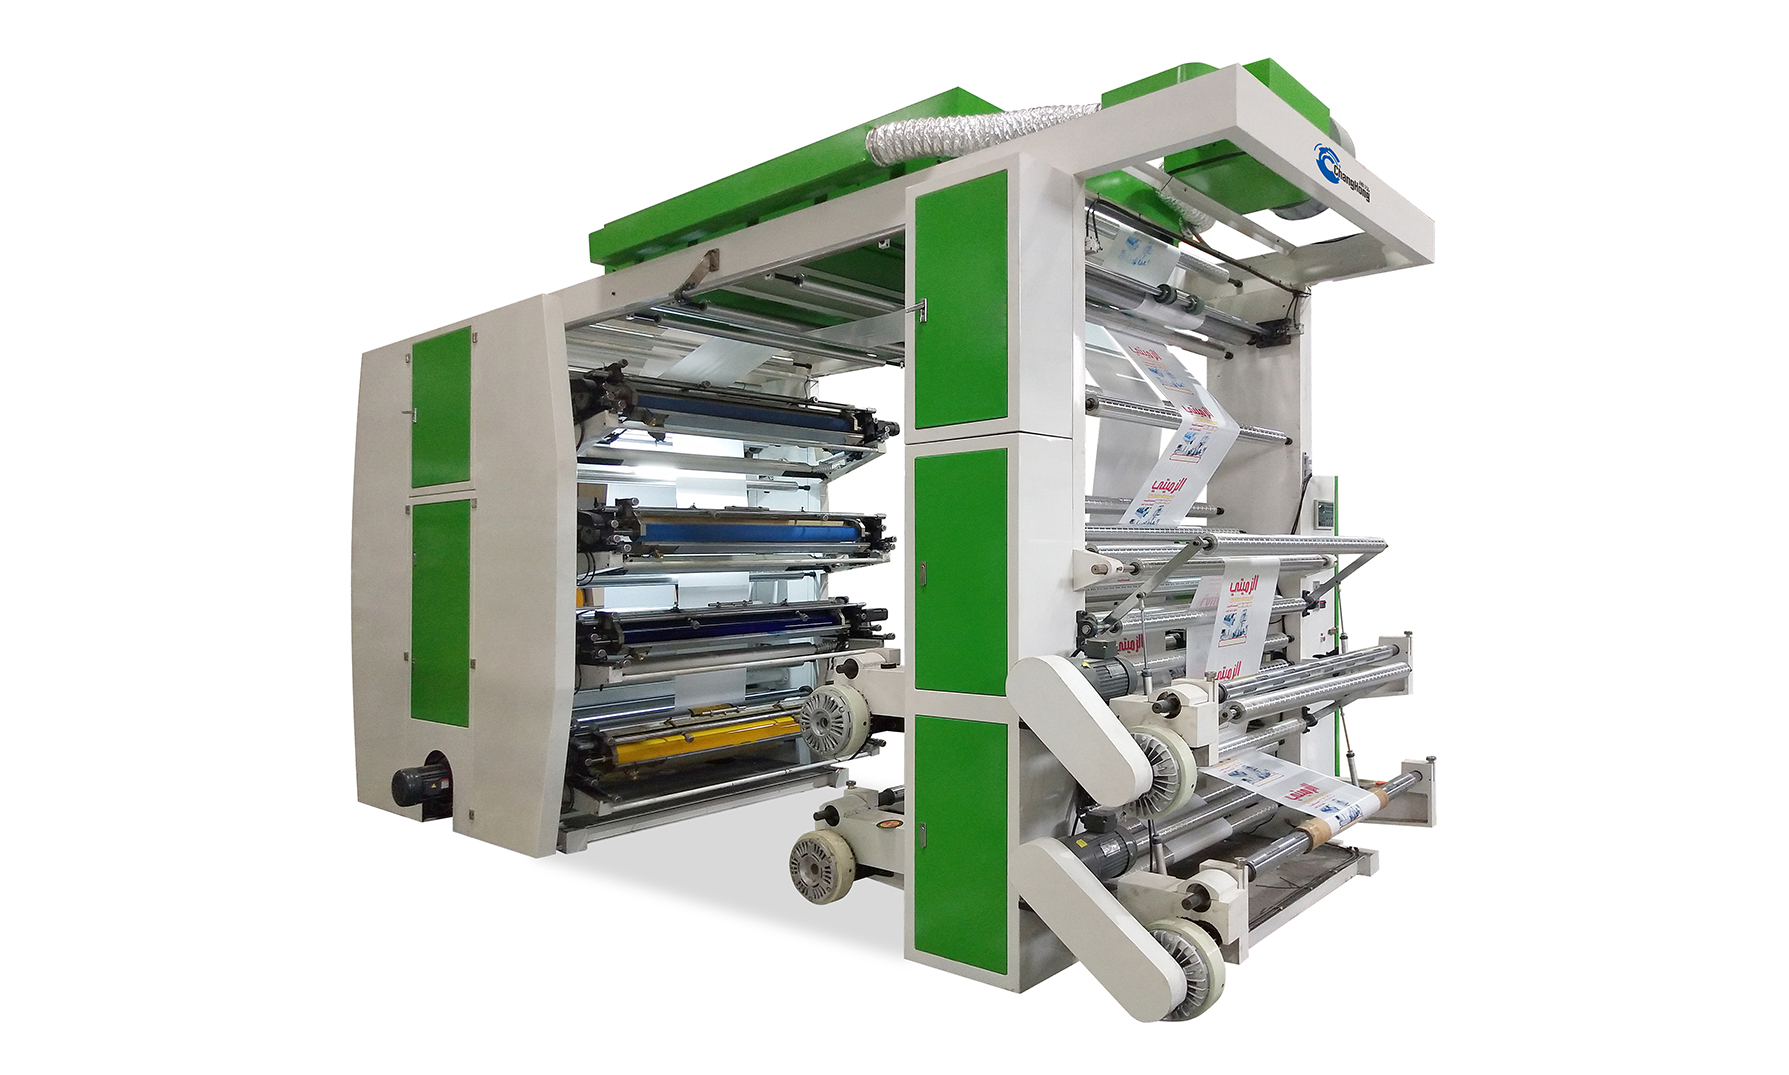 8 Rudzi Stack Type Flexo Printing Machine vagadziri